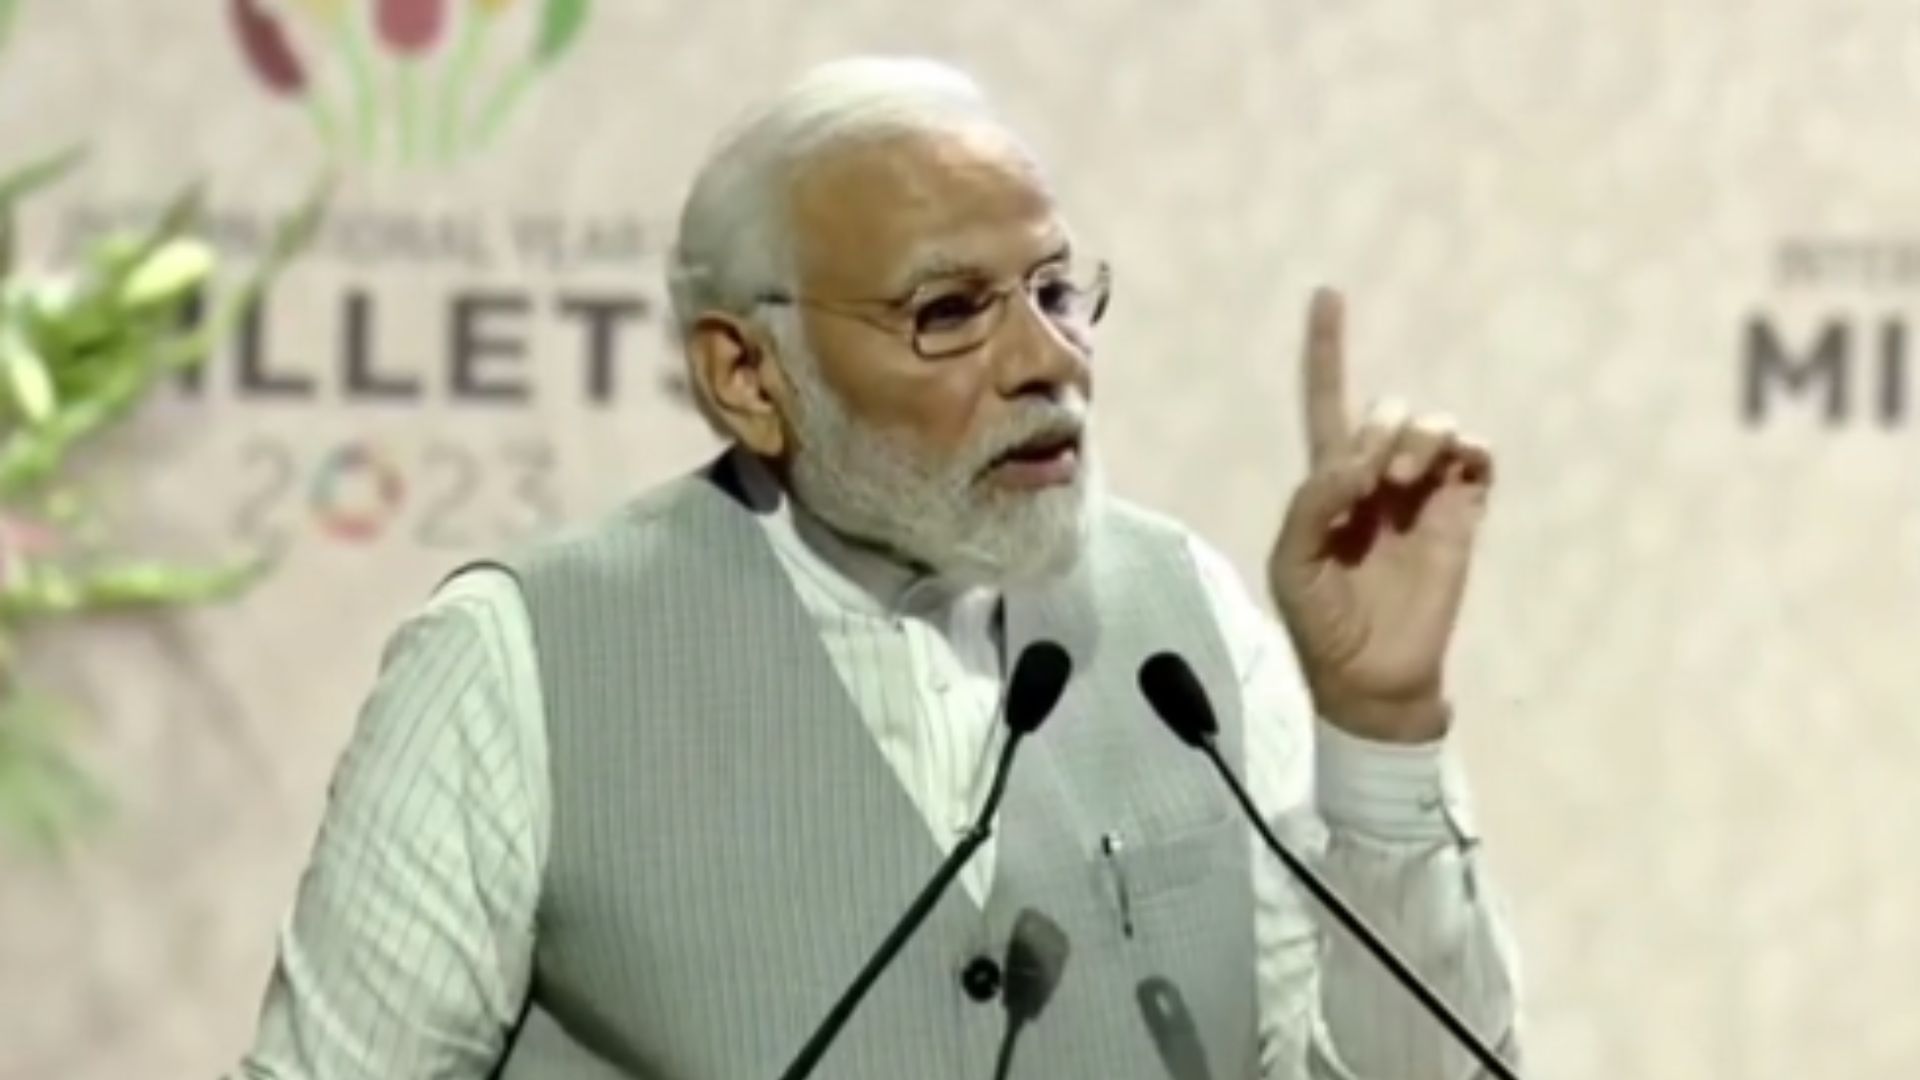 ग्लोबल मिलेट्स कॉन्फ्रेंस : PM मोदी बोले- श्री अन्न भारत में समग्र विकास का एक माध्यम बन रहा